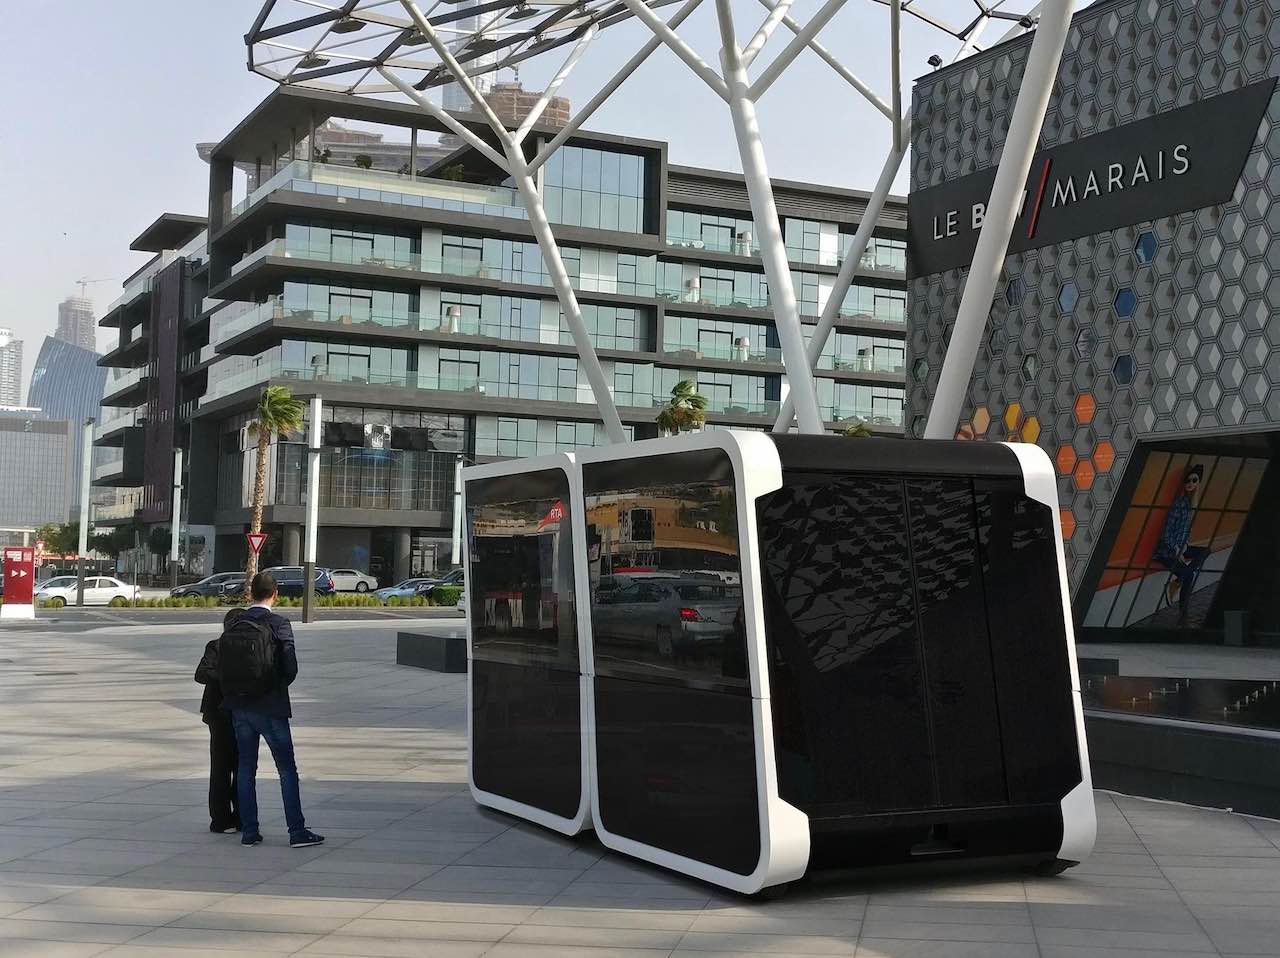 Next, nuovi investimenti per la mobilità urbana arrivano dagli Emirati thumbnail